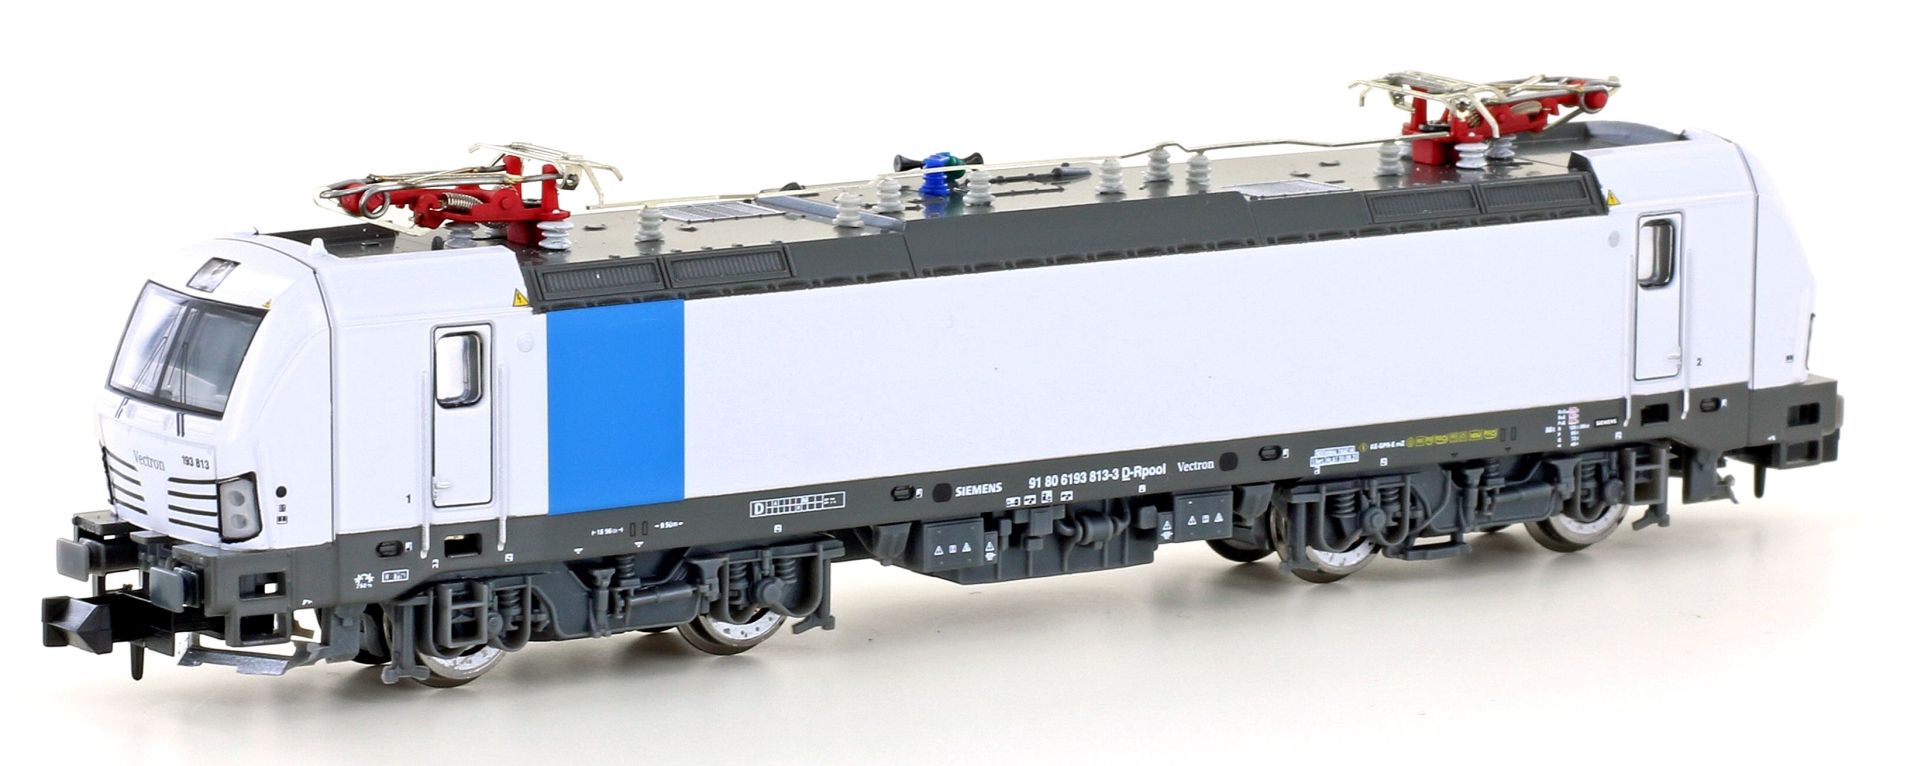 Hobbytrain H30156-S-A24 - E-Lok 193 813 'Vectron', Railpool, Ep.VI, DC-Sound